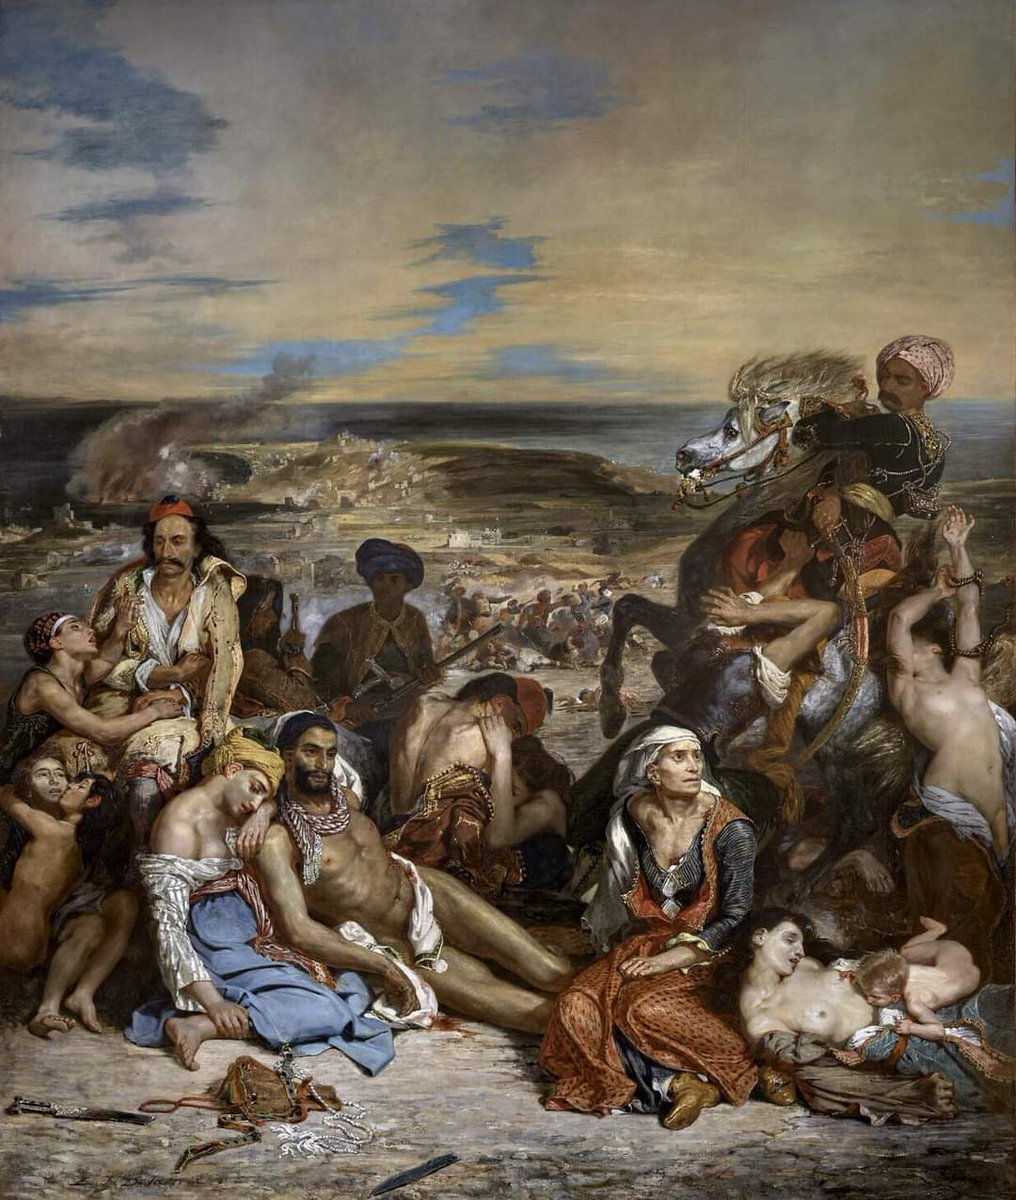 Eugène Delacroix. 26 de abril de 1798-13 de agosto de 1863. Artista romántico francés considerado desde el comienzo de su carrera como el líder de la escuela romántica francesa. La matanza de Chios, 1824. Museo Louvre .